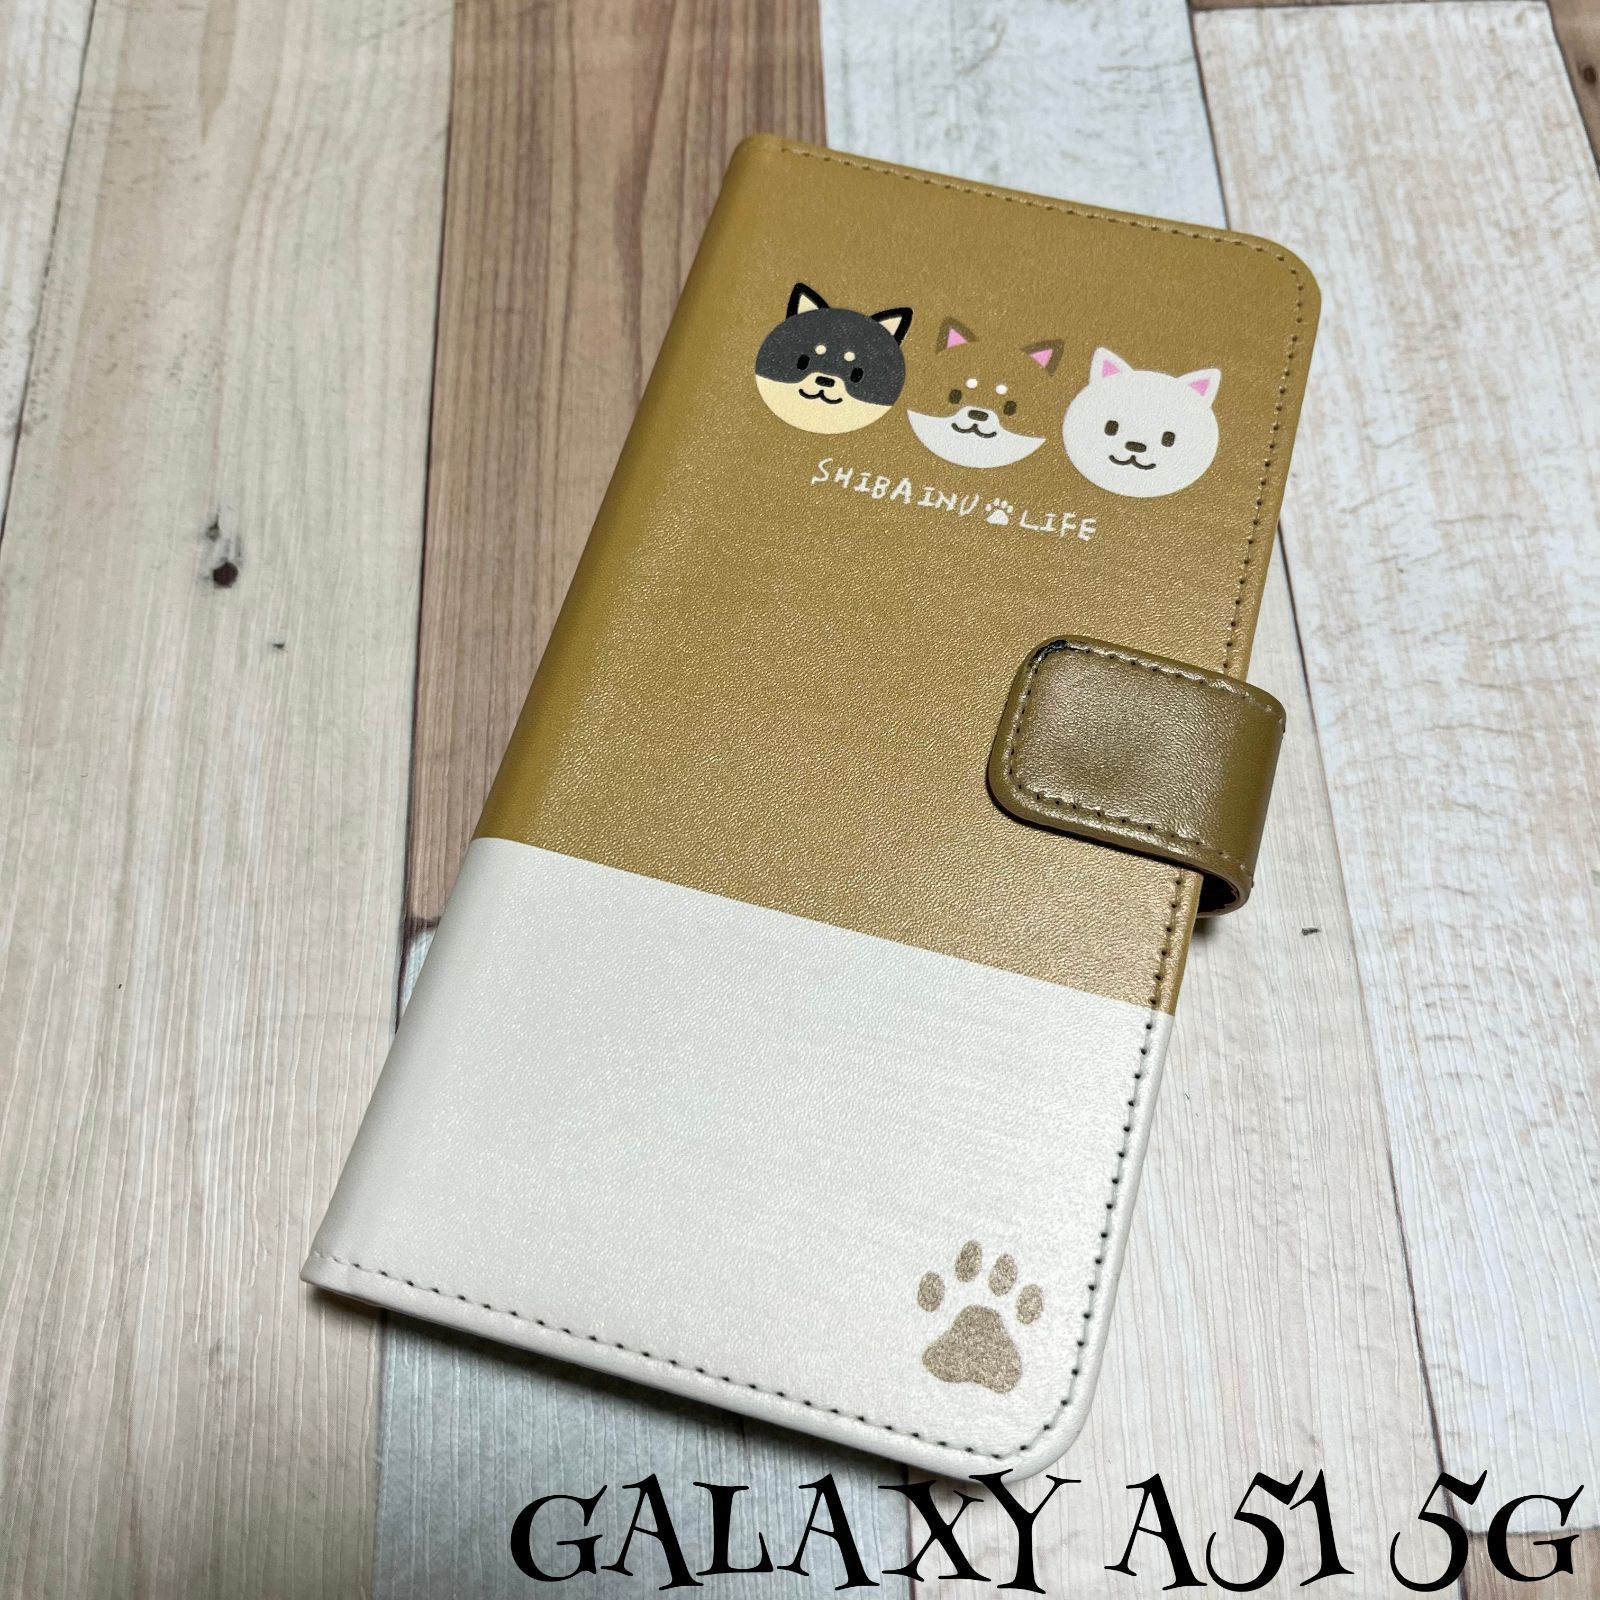 配送員設置 Galaxy A51 5G 手帳型スマホケース